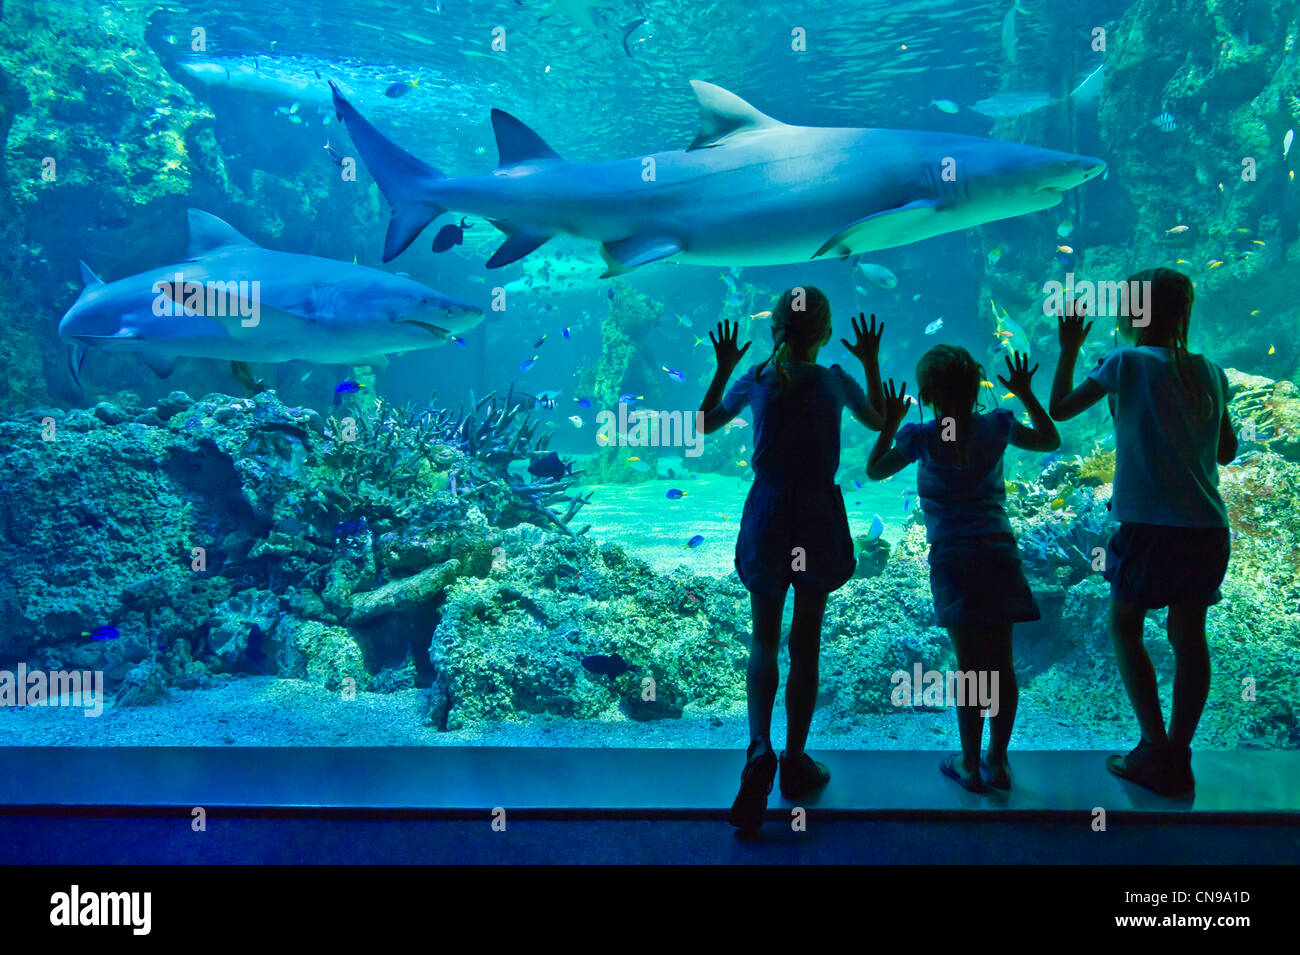 Australia, New South Wales, Sydney, el acuario de Sydney, los visitantes mirando a los tiburones (Selachimorpha) Foto de stock